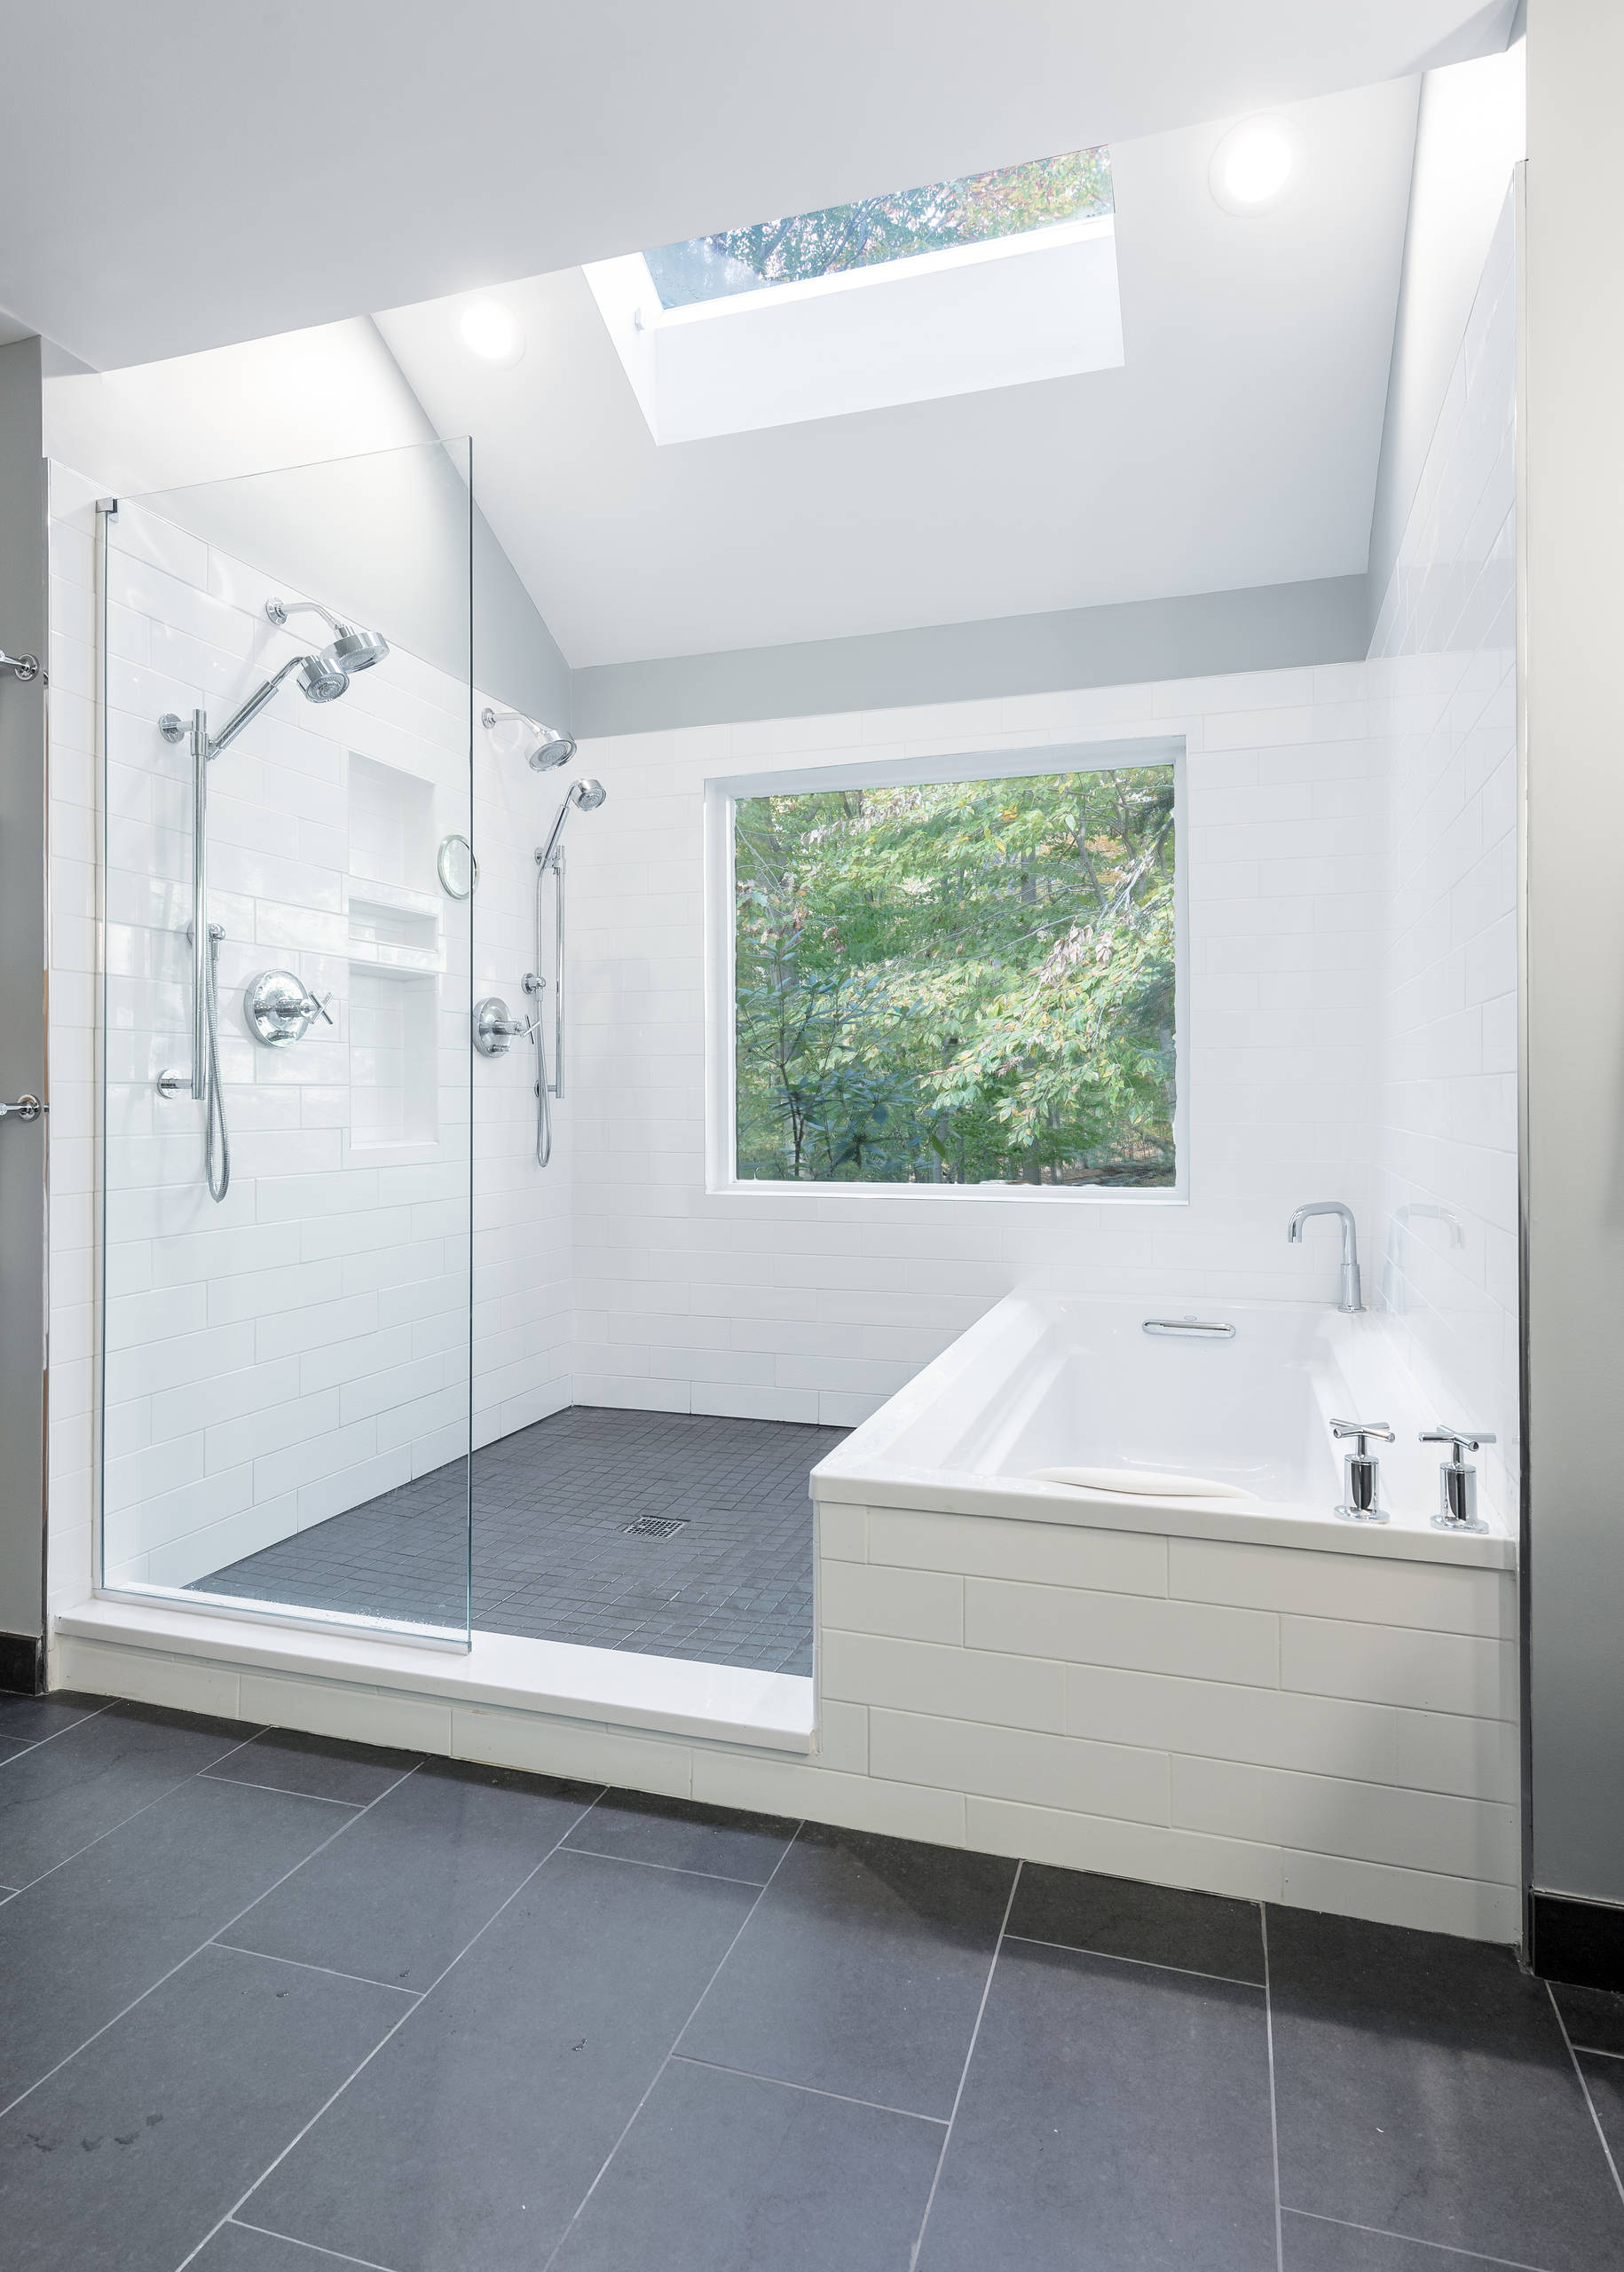 57+ Black Bathroom Ideas ( COOL & DRAMATIC ) - Stylish Bathrooms